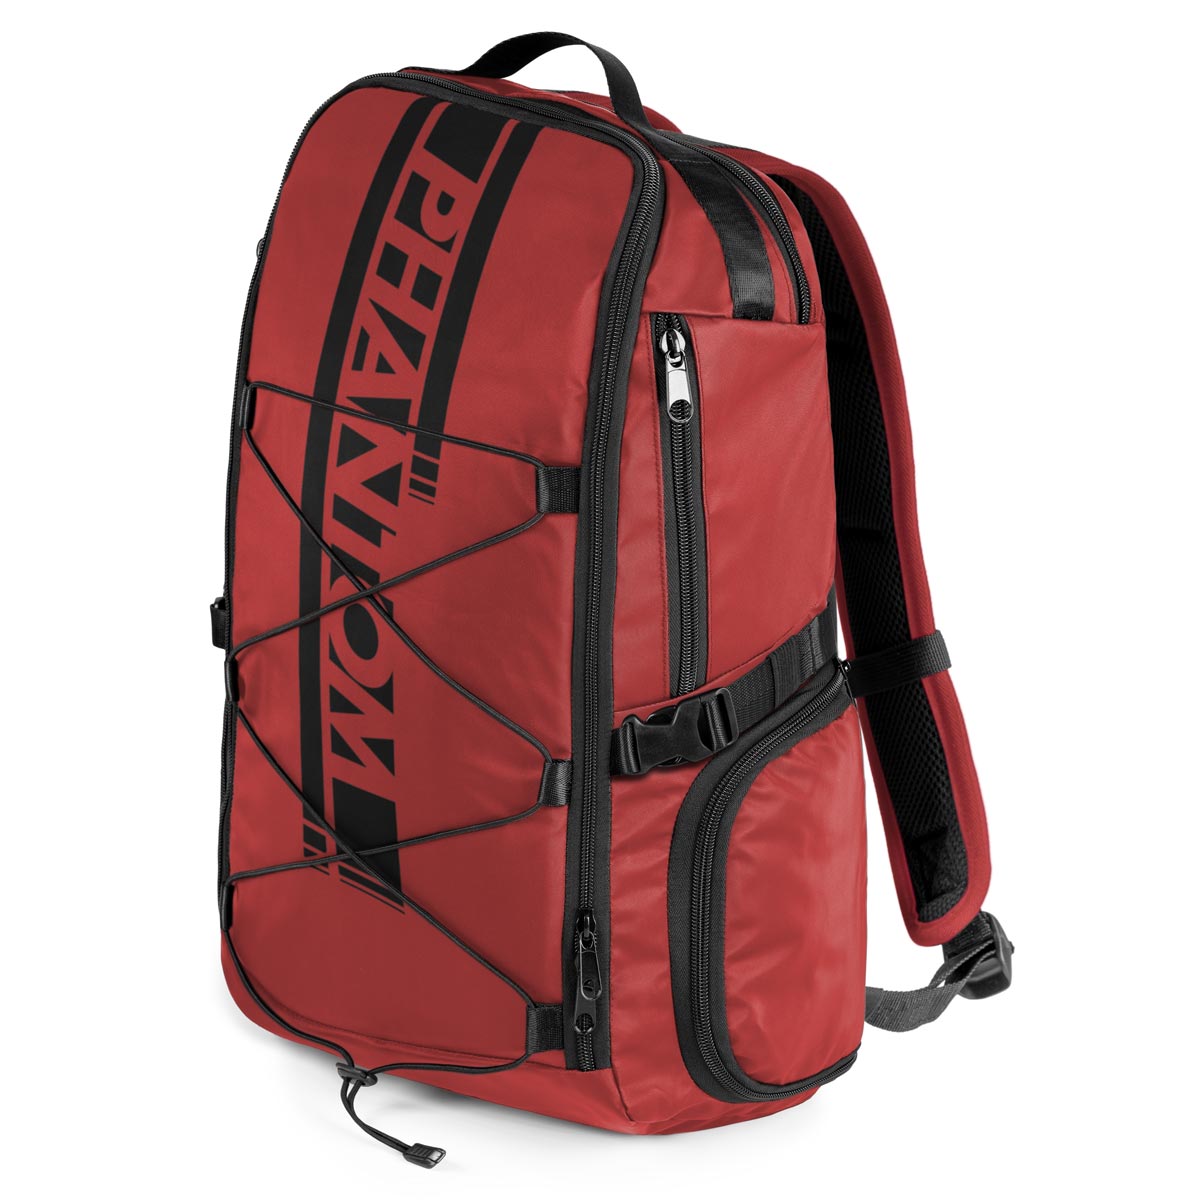 La nueva mochila de artes marciales Phantom APEX. Acabado compacto y de alta calidad. Suficiente espacio de almacenamiento para tu entrenamiento diario. 